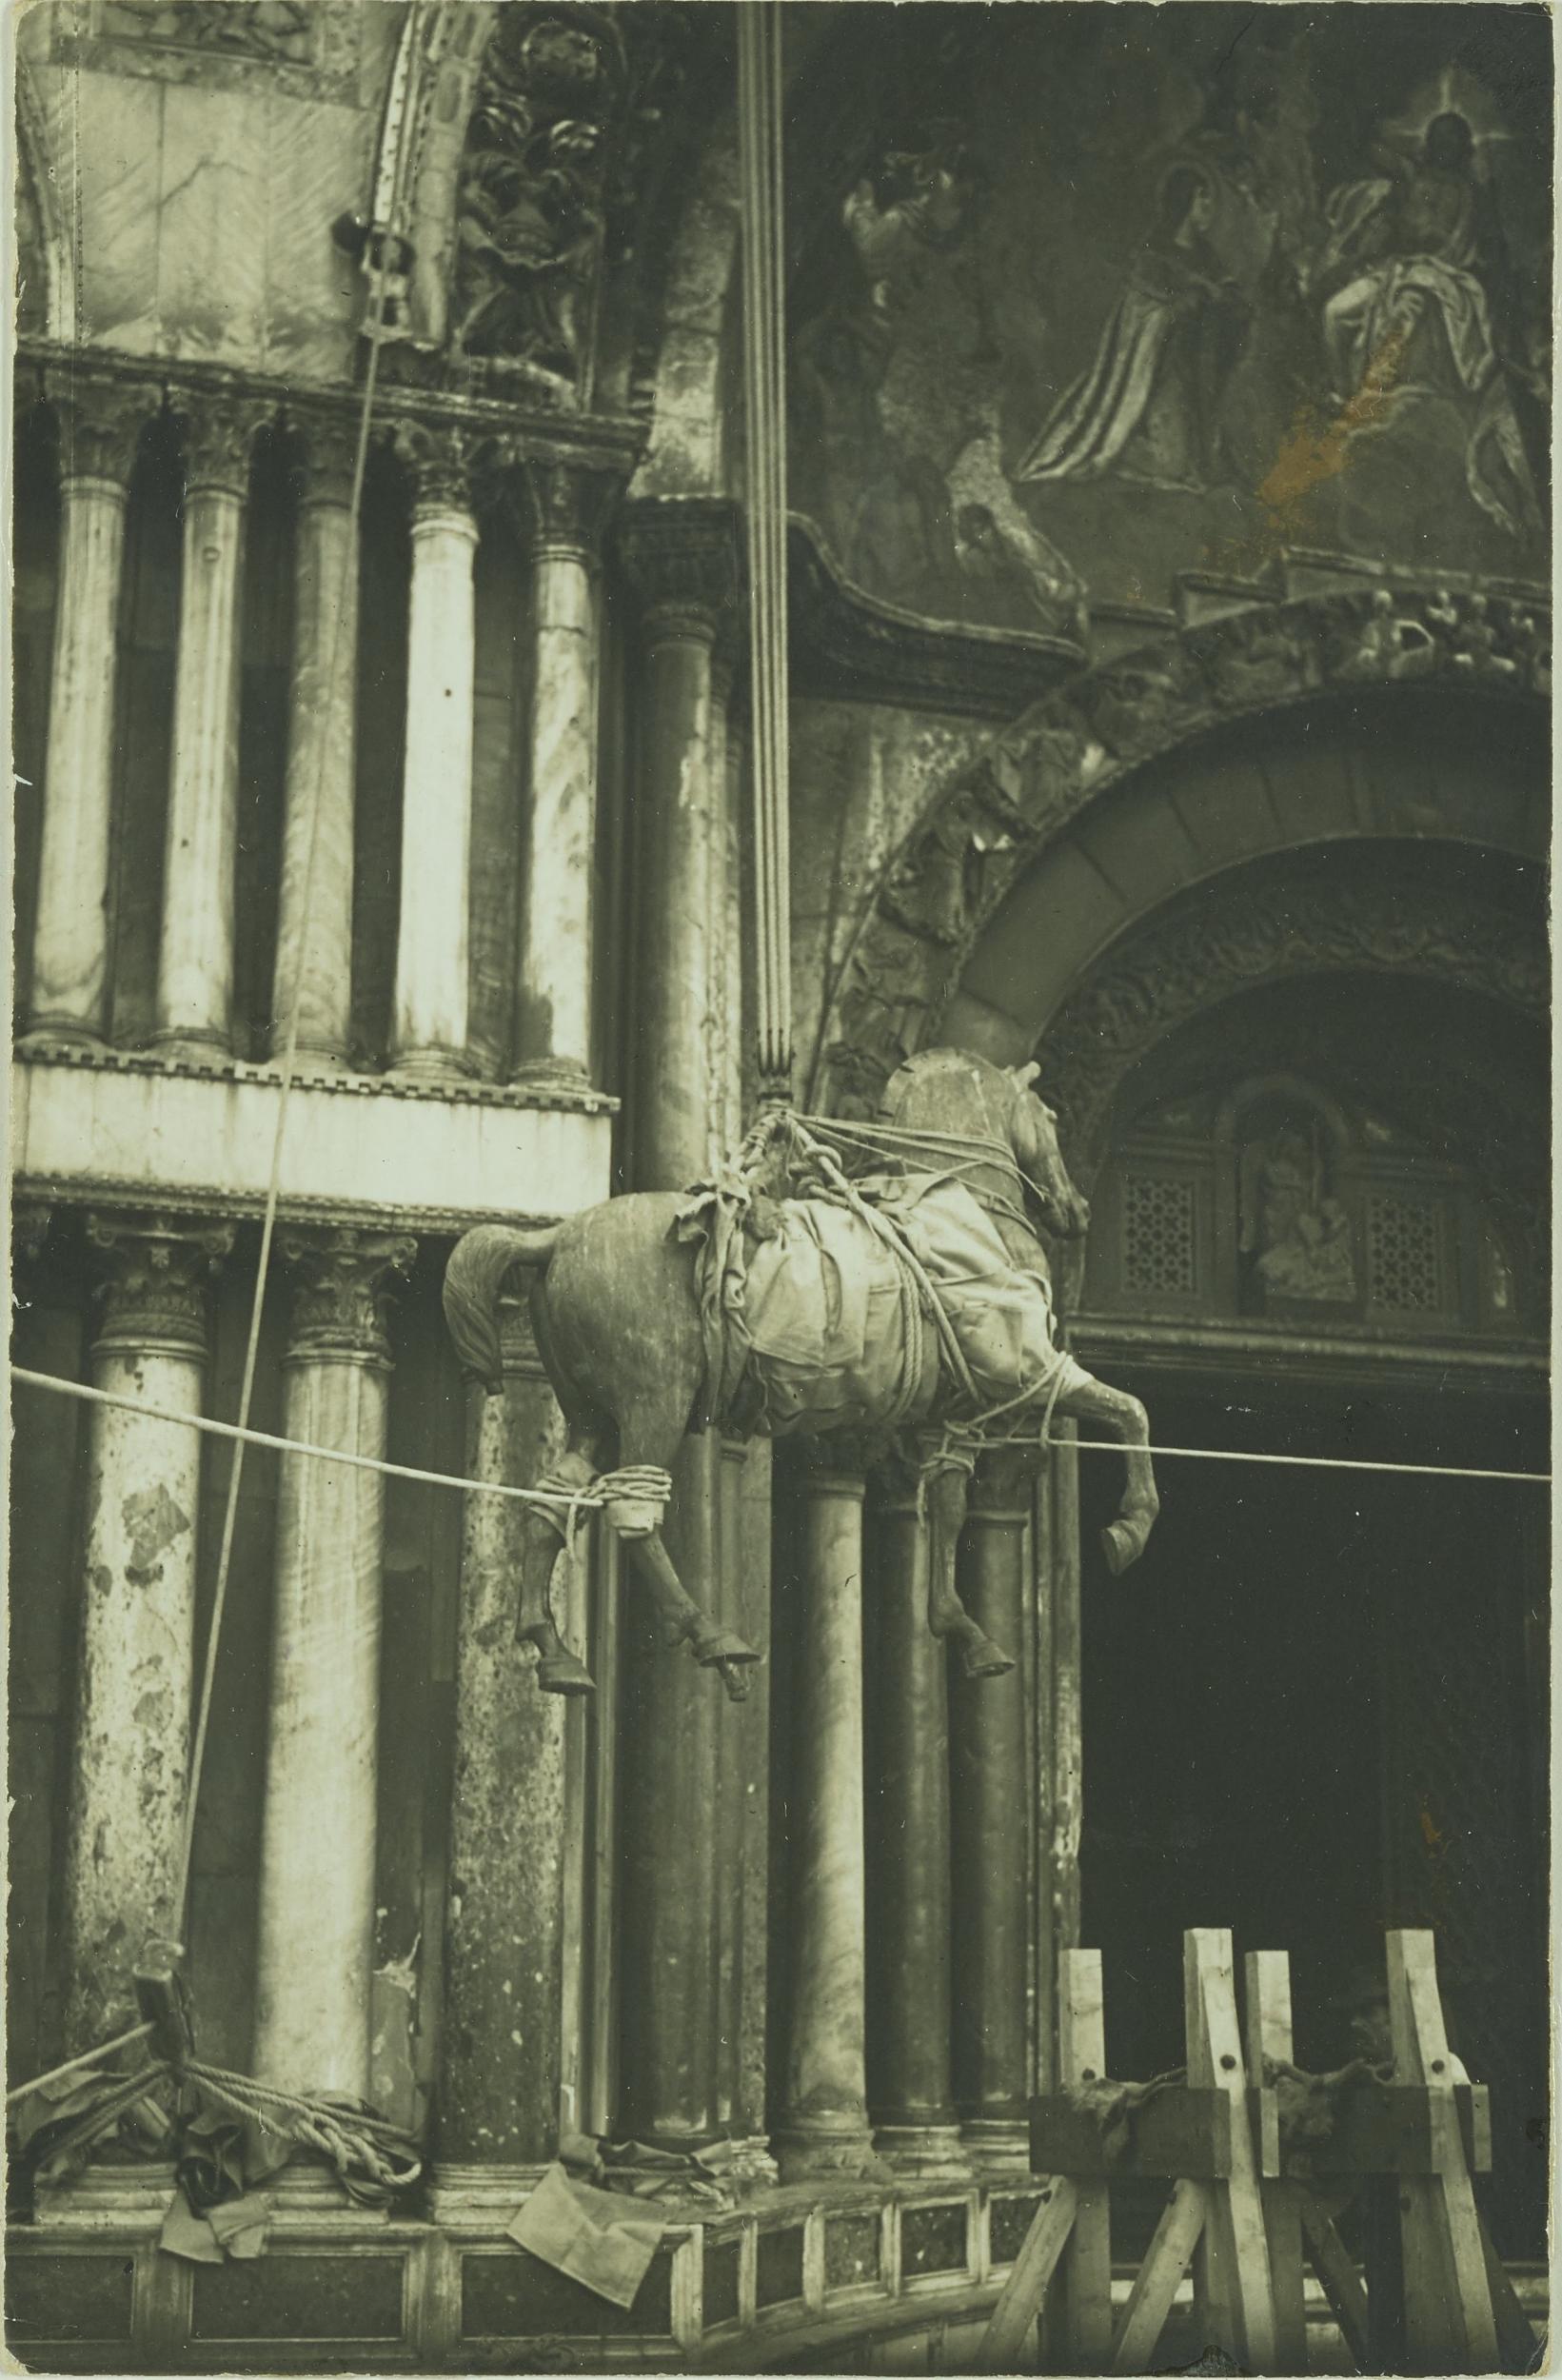 Fotografo non identificato, Venezia - Basilica di S. Marco, un cavallo, trasporto, 1915, gelatina ai sali d'argento, MPI153192